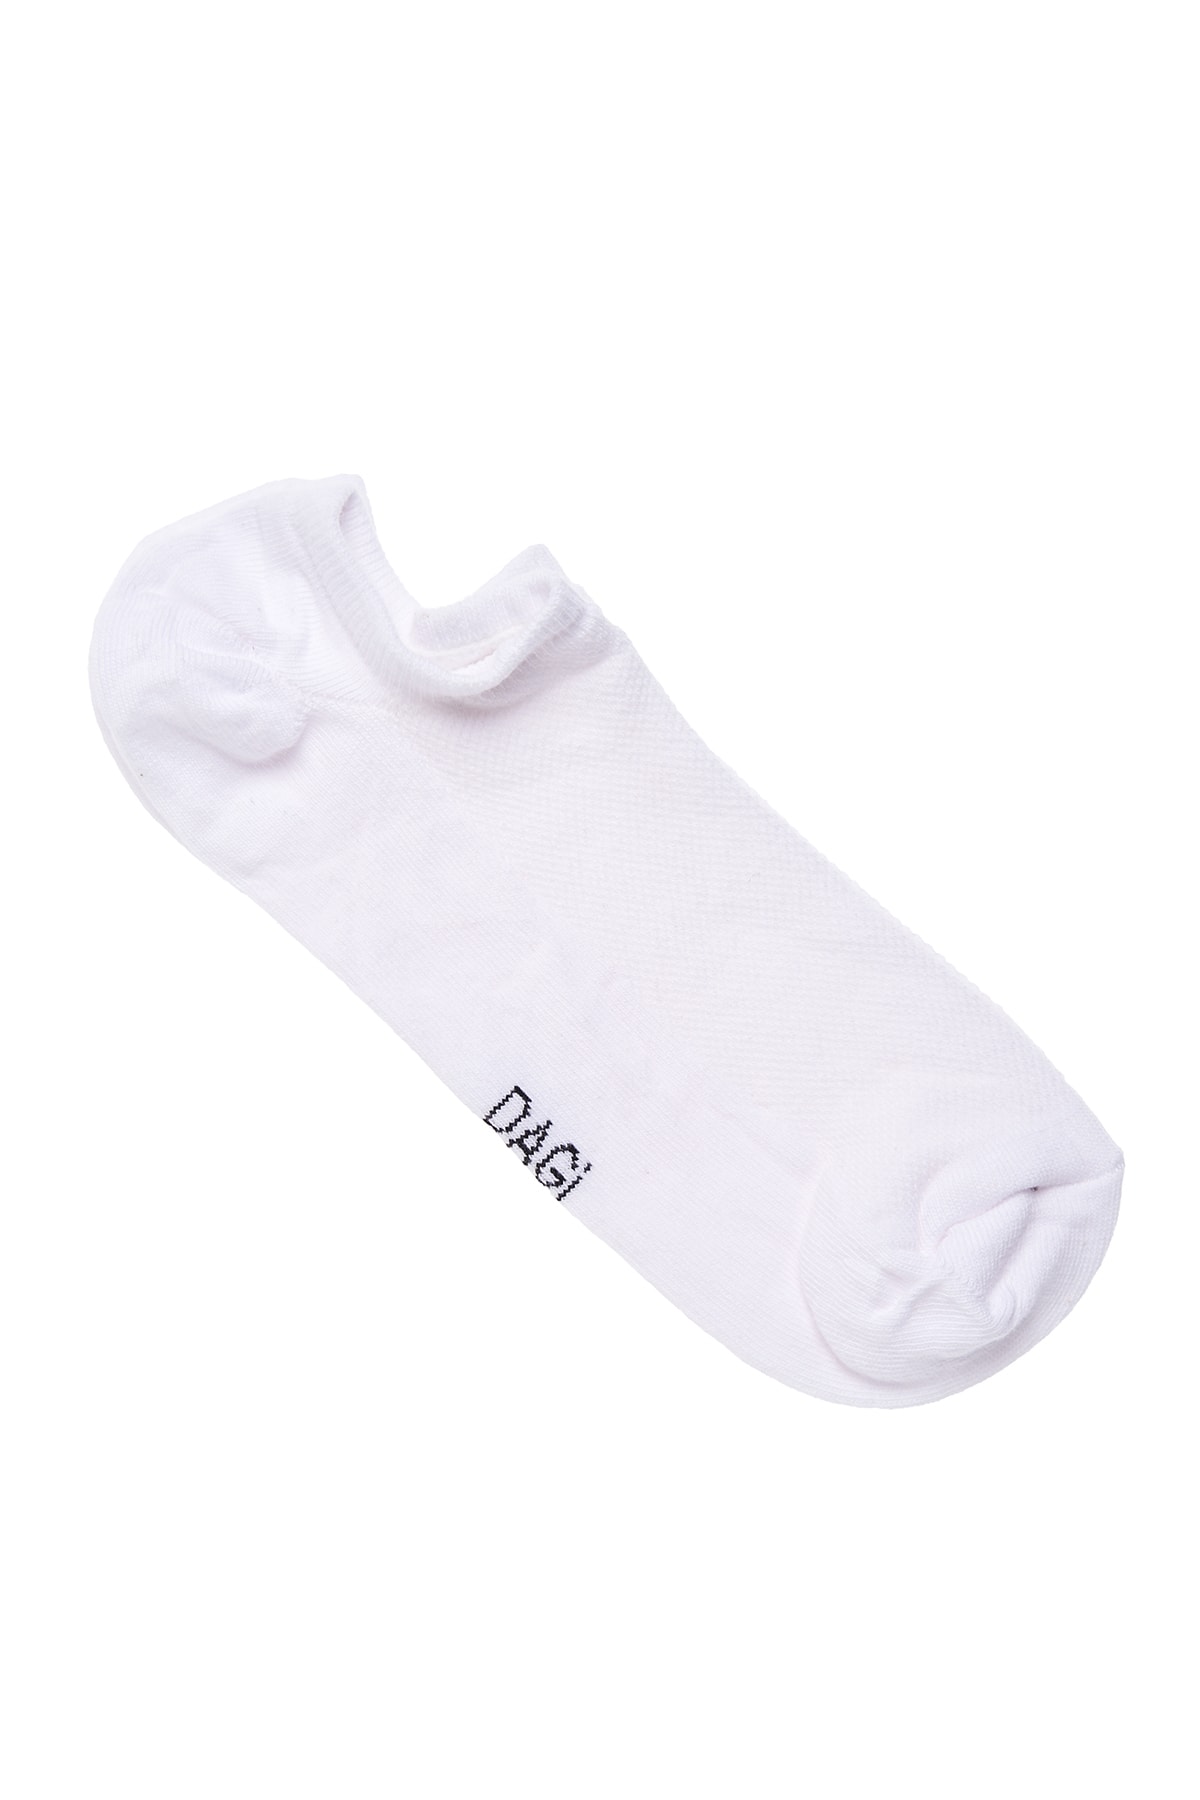 Dagi Men's White Cotton Short Ballerina Socks